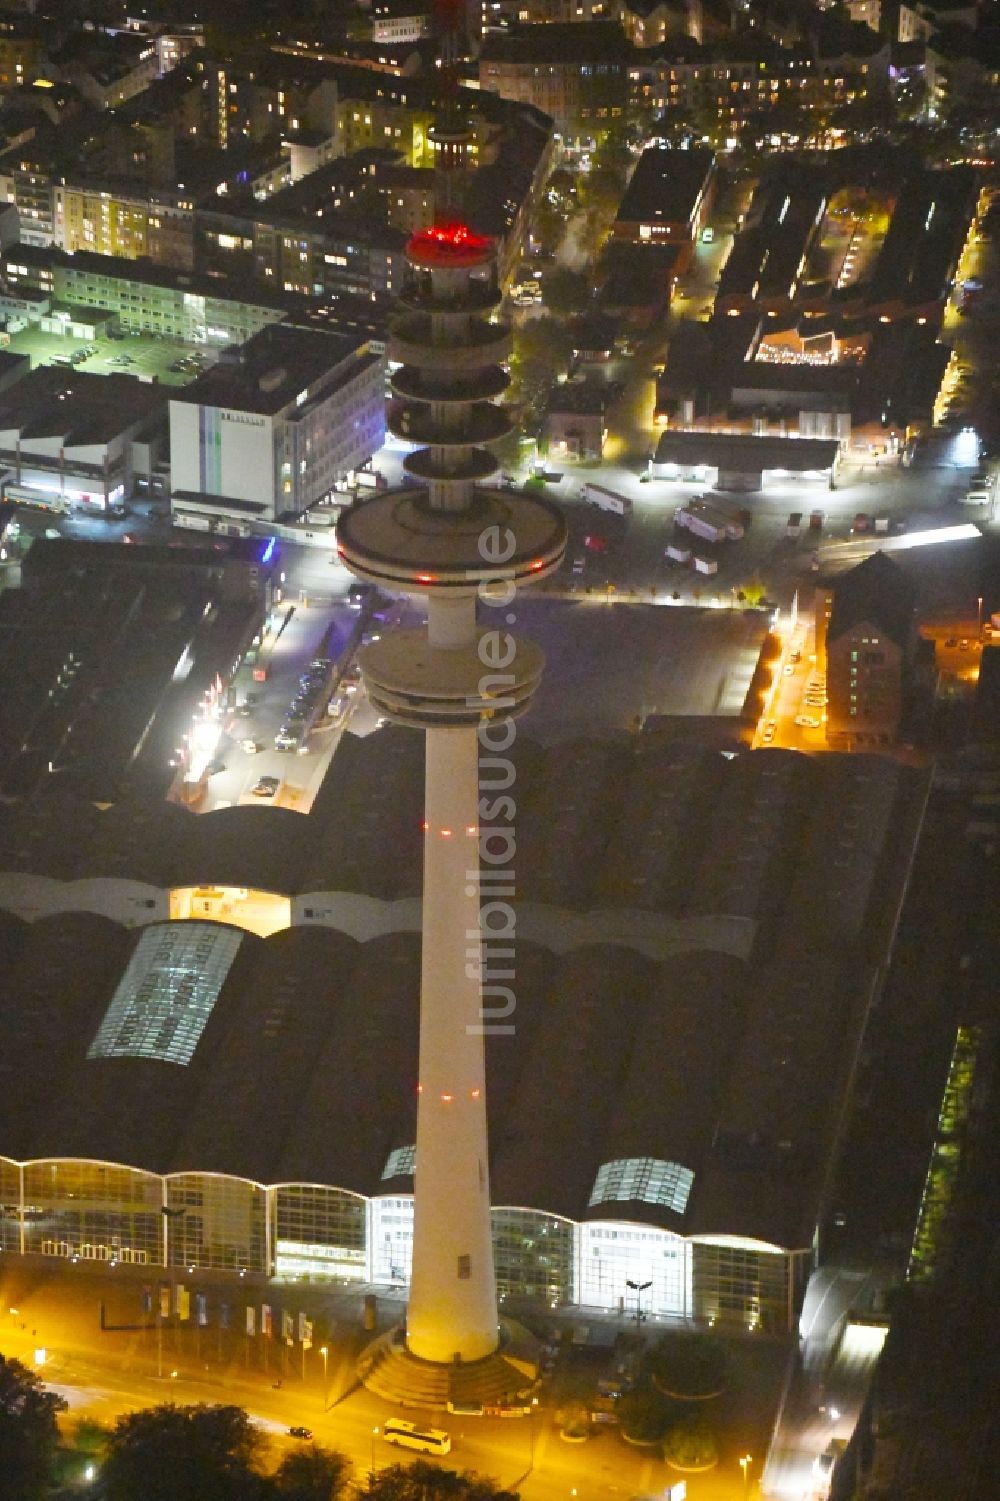 Nacht-Luftaufnahme Hamburg - Nachtluftbild Fernsehturm Heinrich-Hertz-Turm am Messegelände in Hamburg